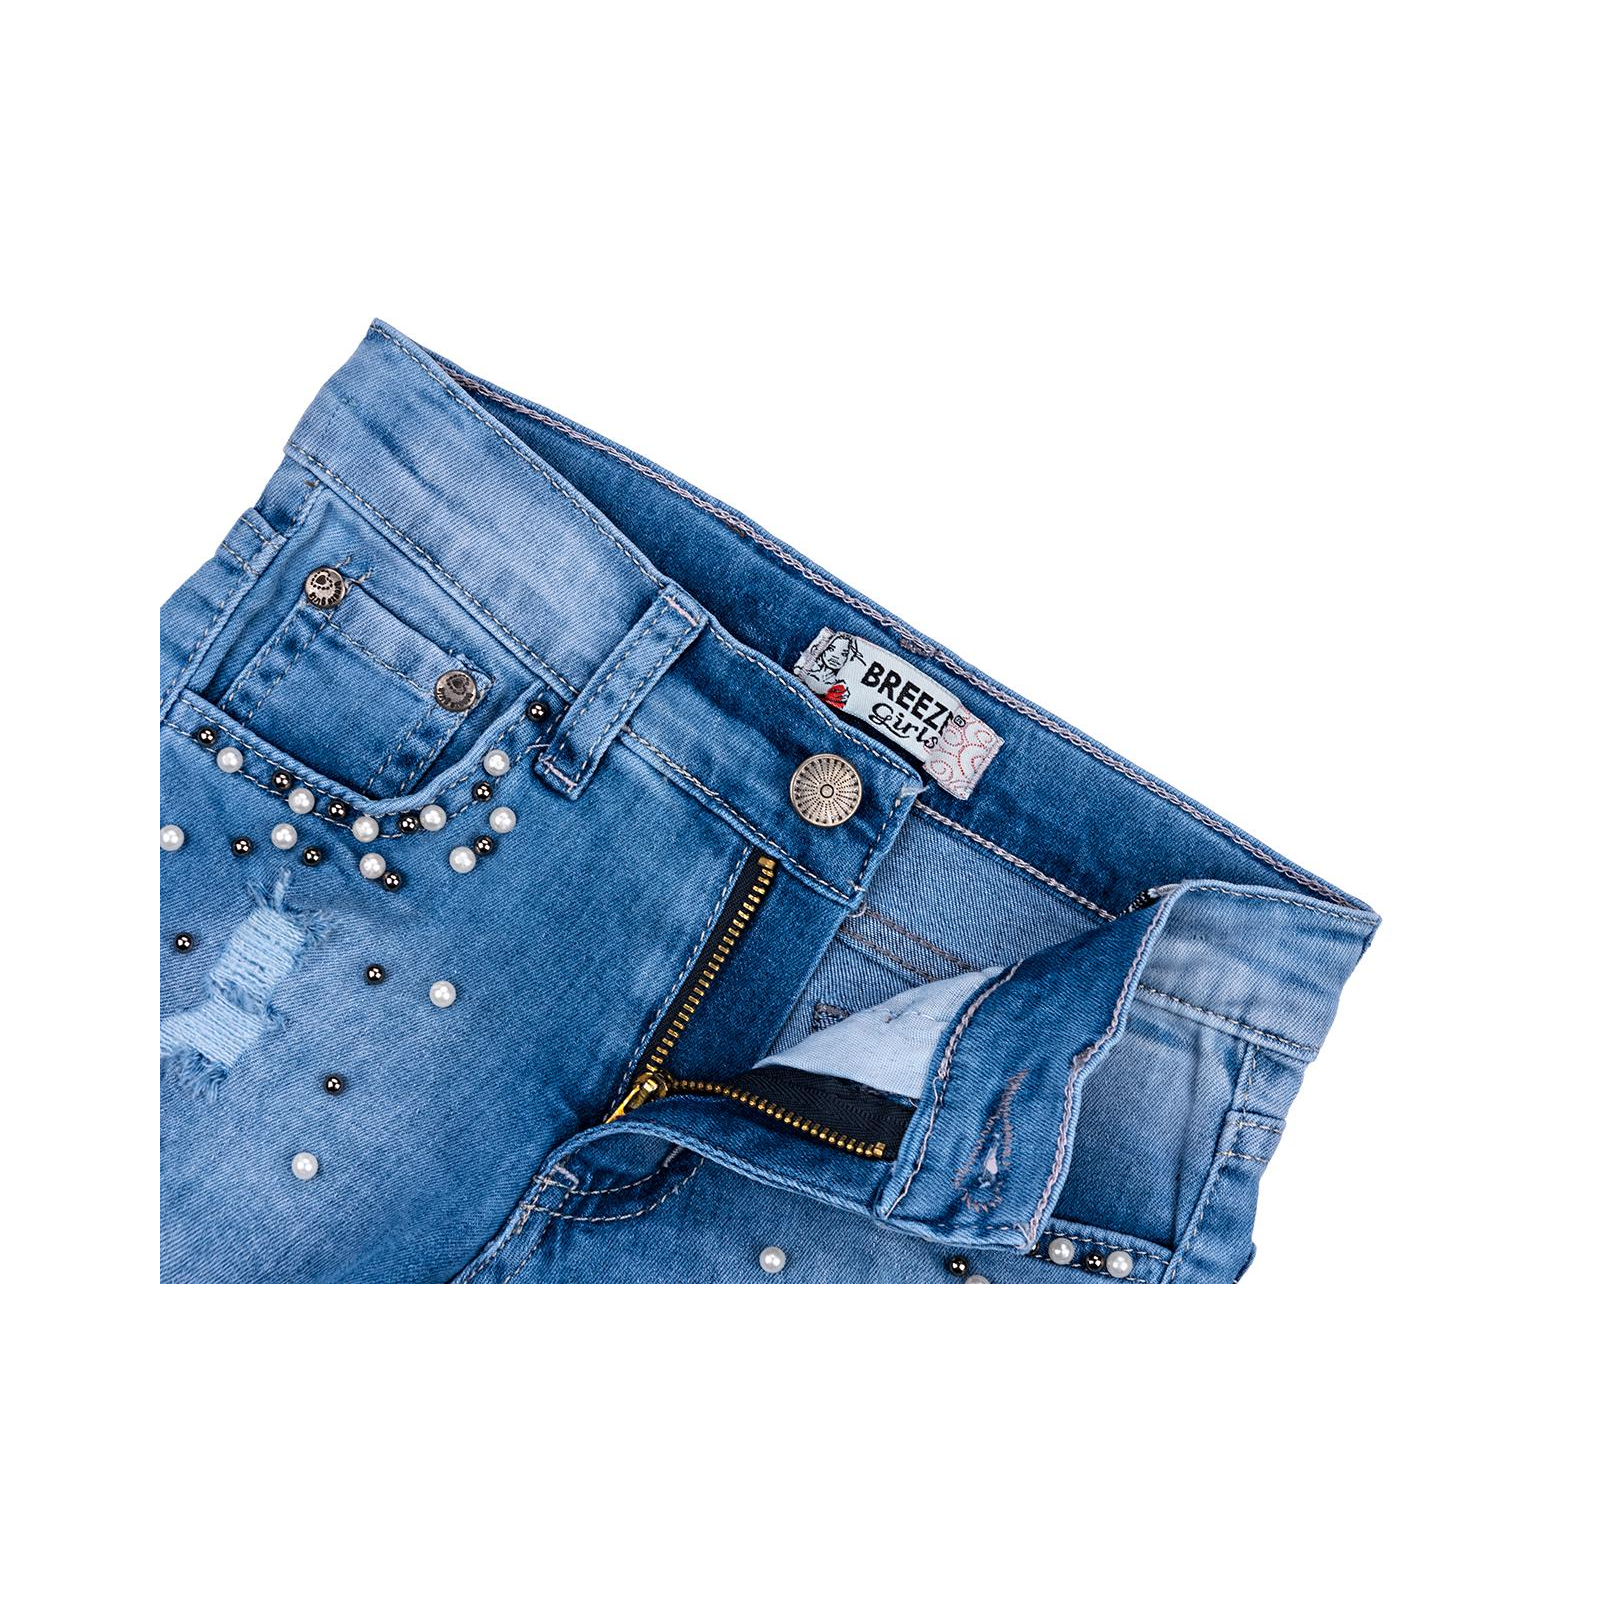 Шорты Breeze джинсовые с бусинами (20139-128G-blue) изображение 3